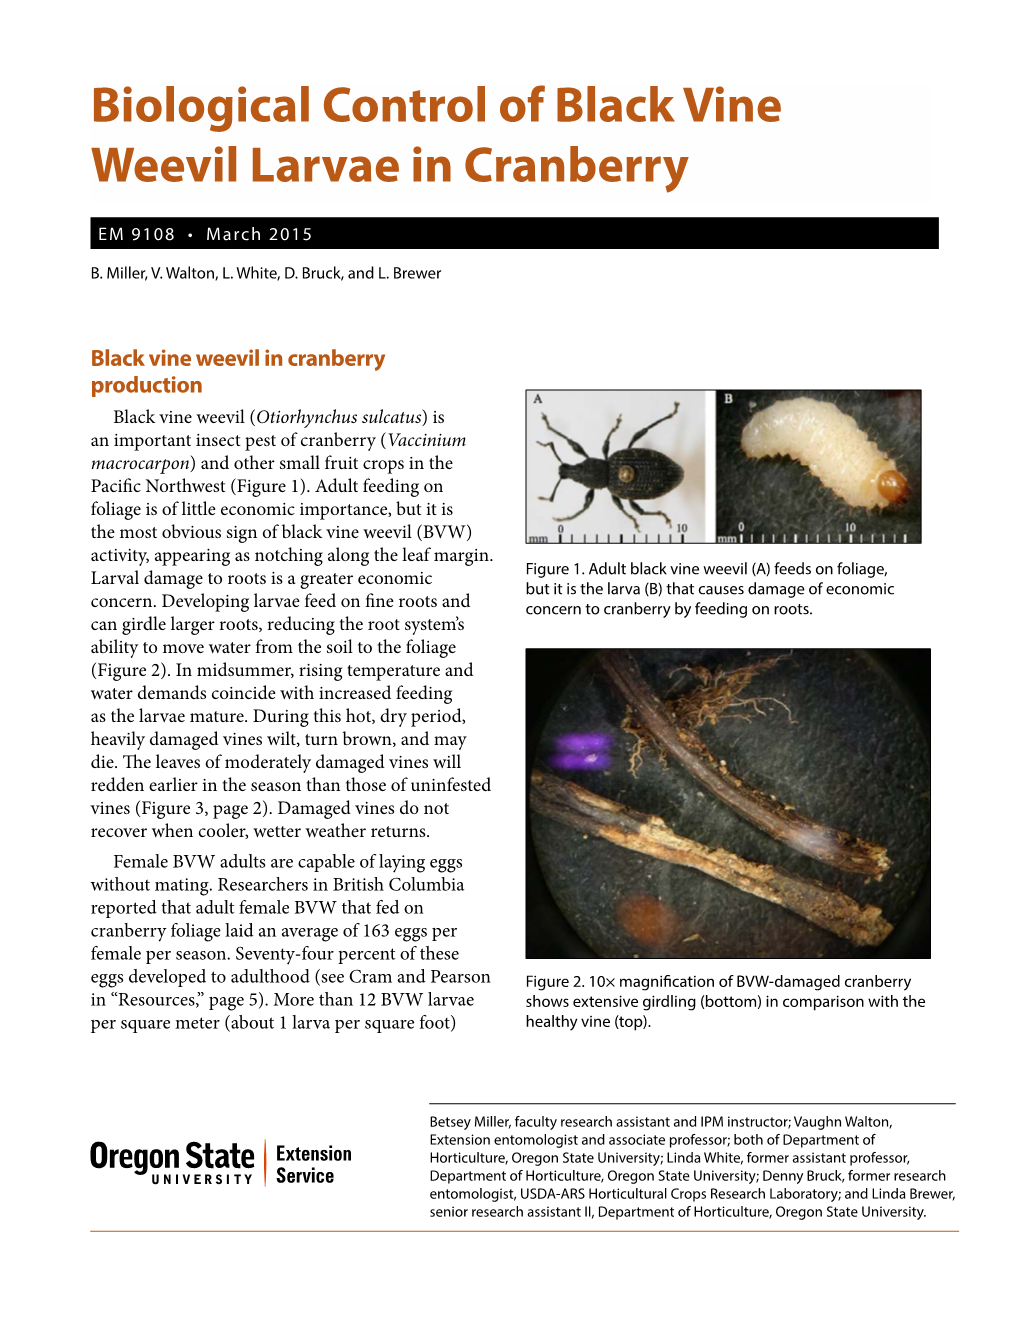 Biological Control of Black Vine Weevil Larvae in Cranberry